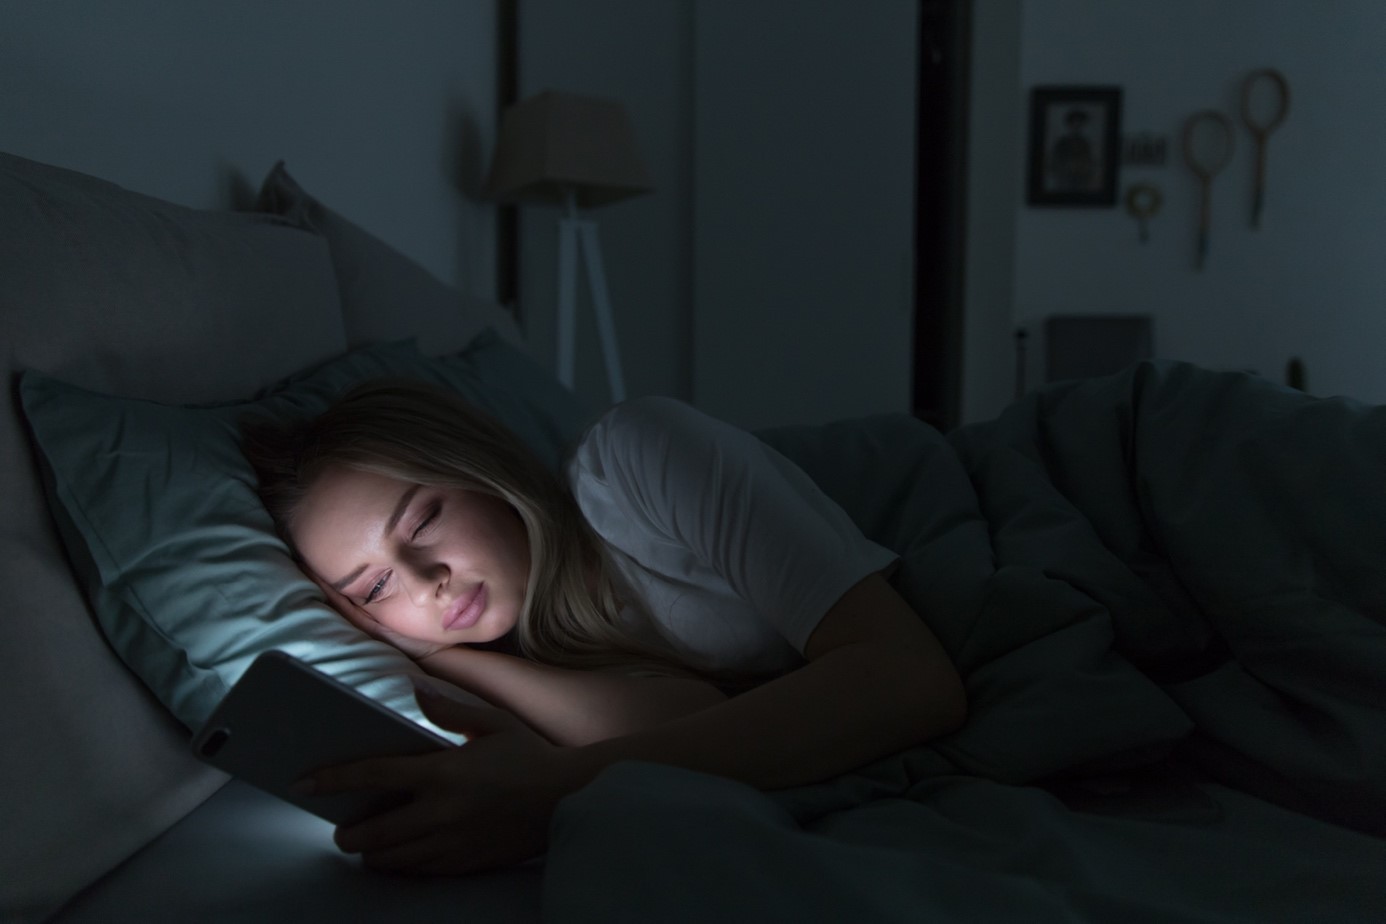 Problemy ze snem – co zrobić, żeby zasnąć? Dlaczego mamy problemy z zasypianiem i jakie są sposoby na zdrowy sen?